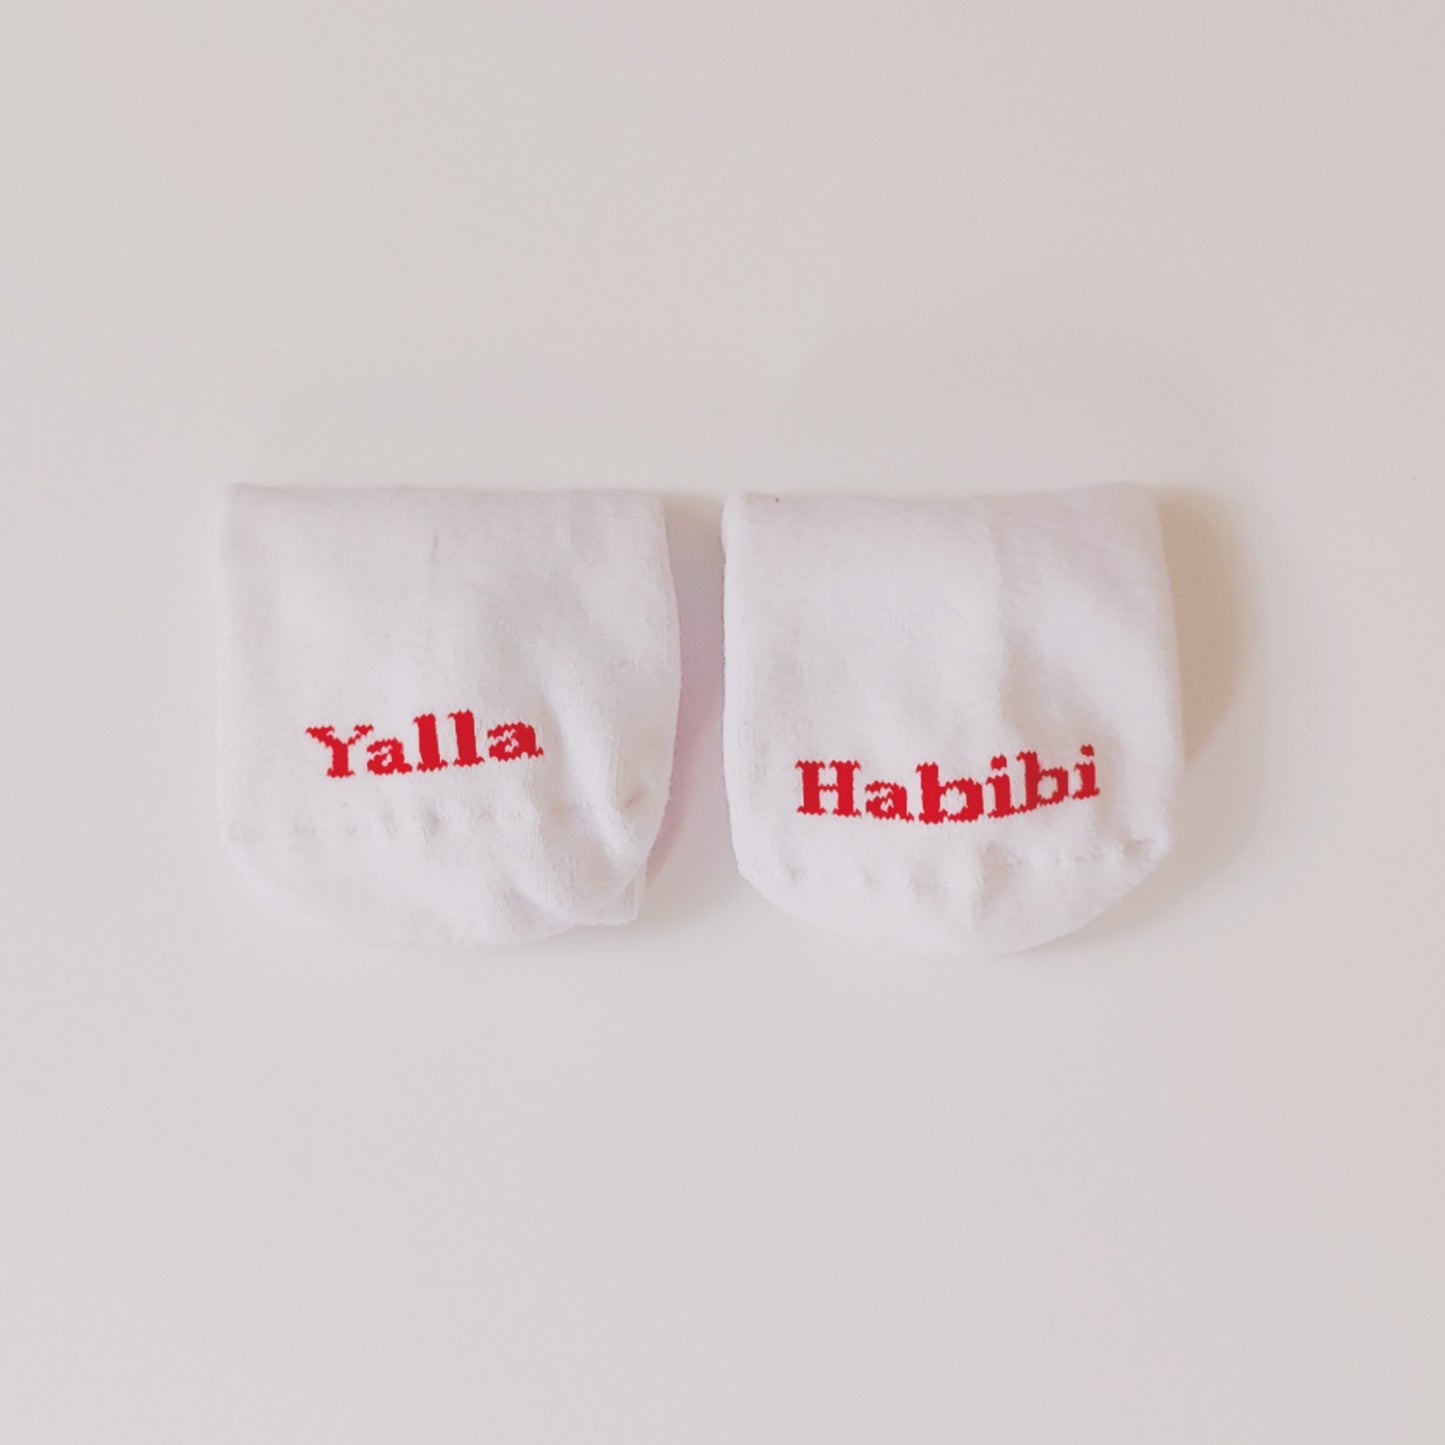 Socks Yalla habibi wom(men)